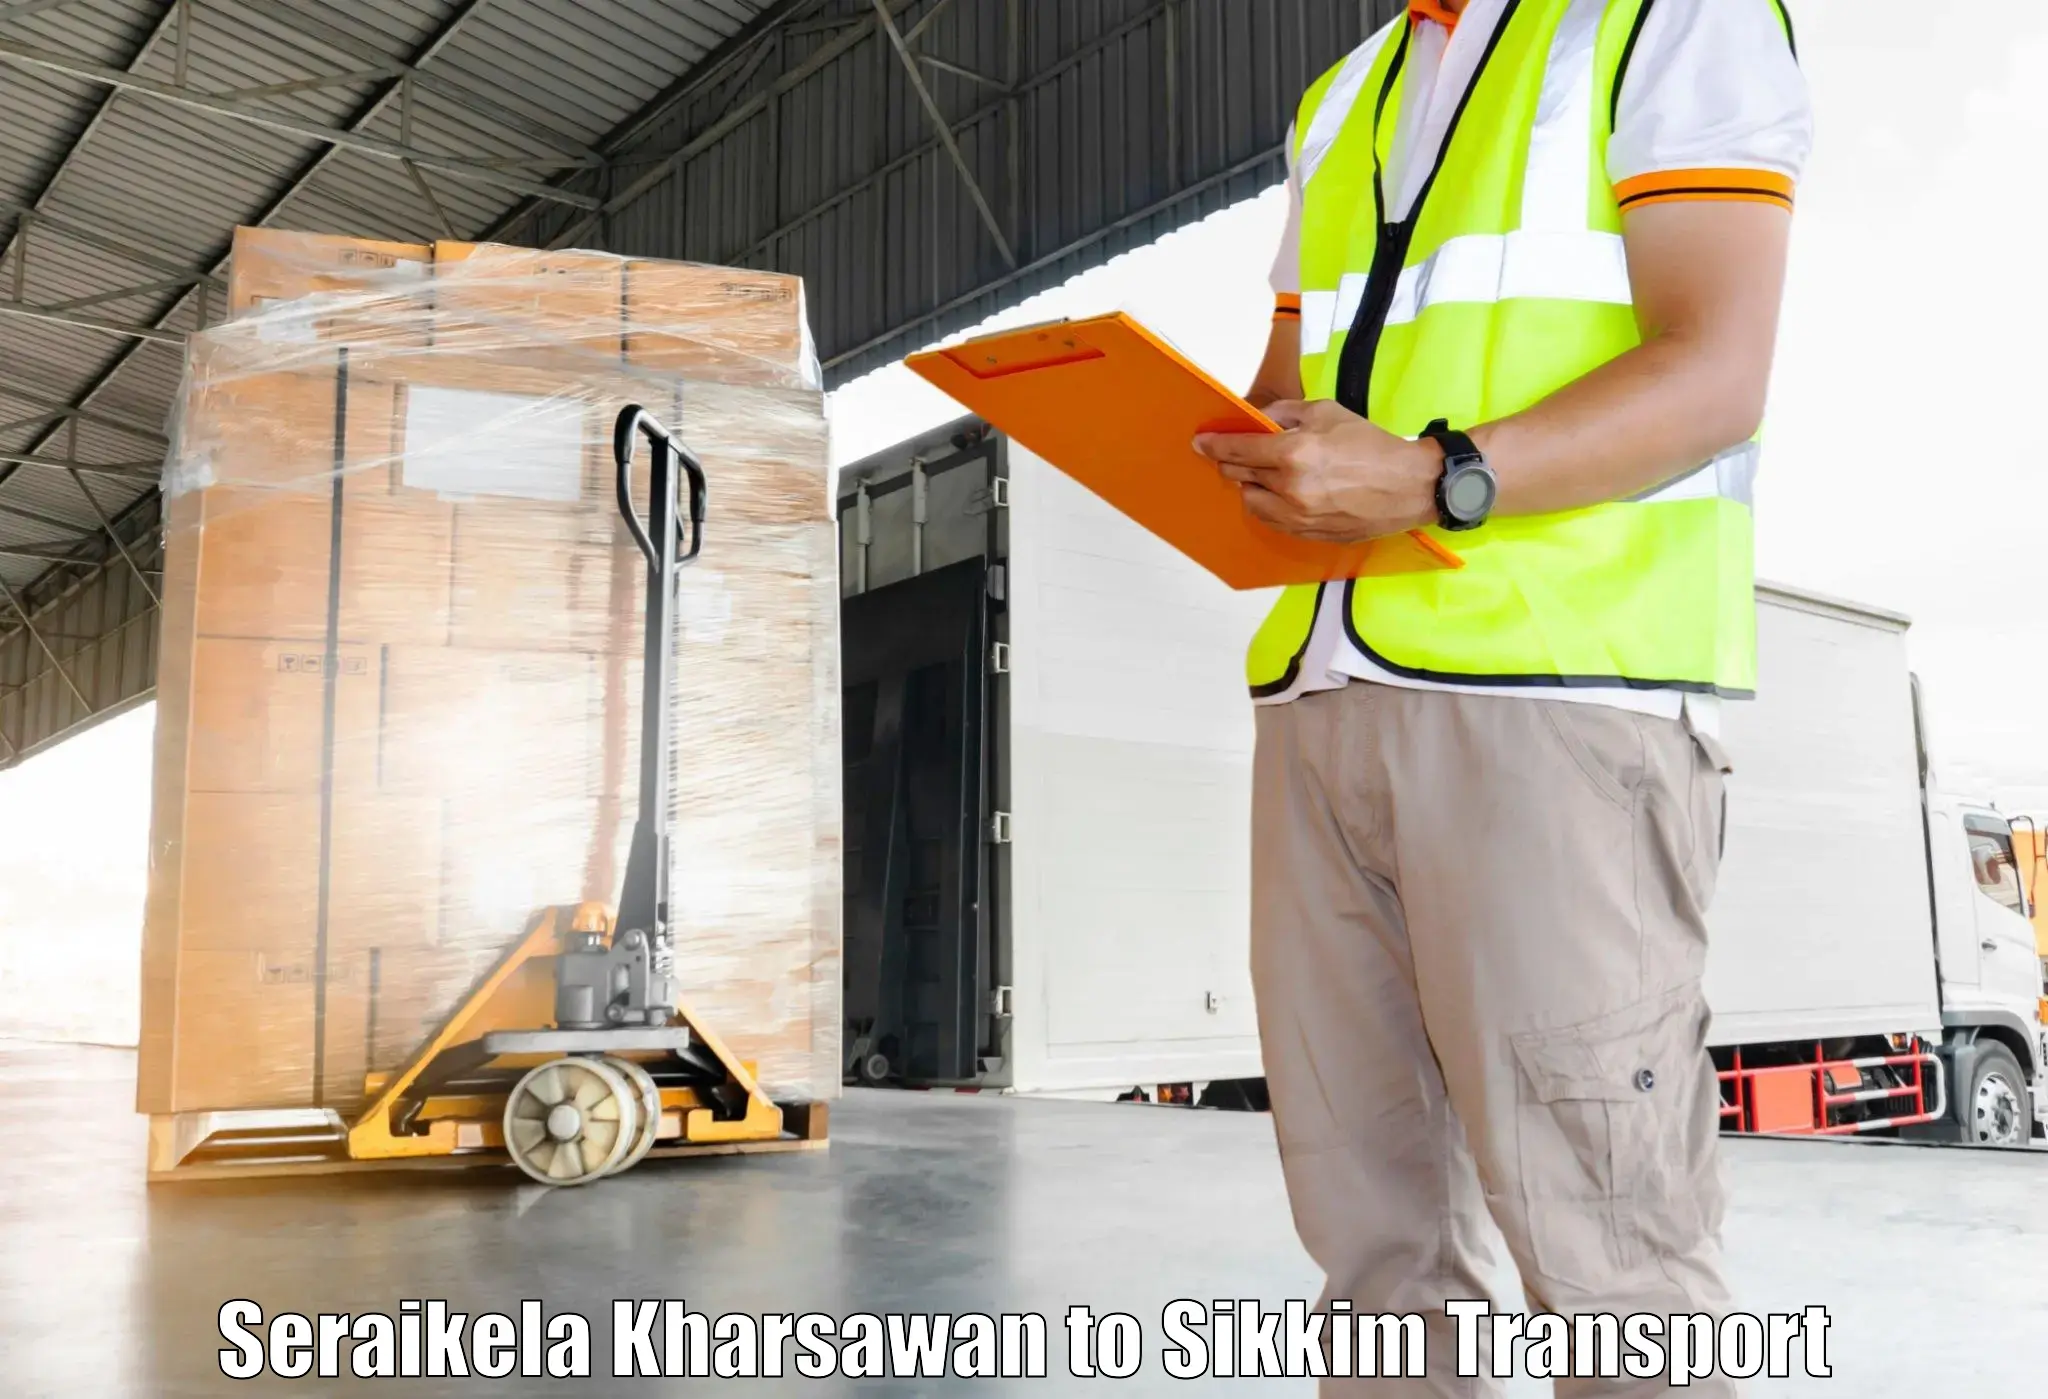 Truck transport companies in India Seraikela Kharsawan to North Sikkim